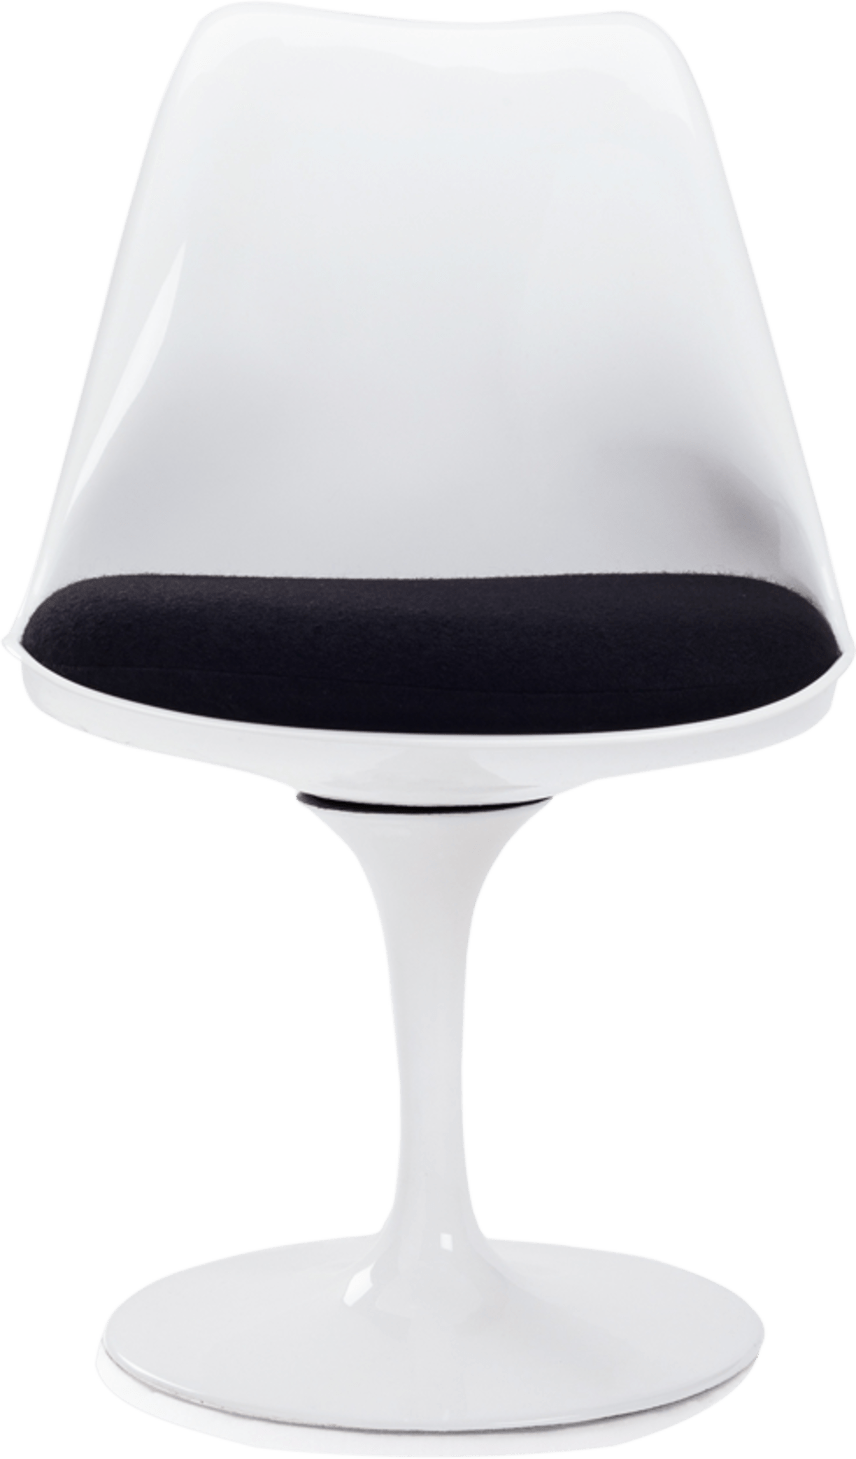 Tulip Chair - Glasfiber Black/White image.